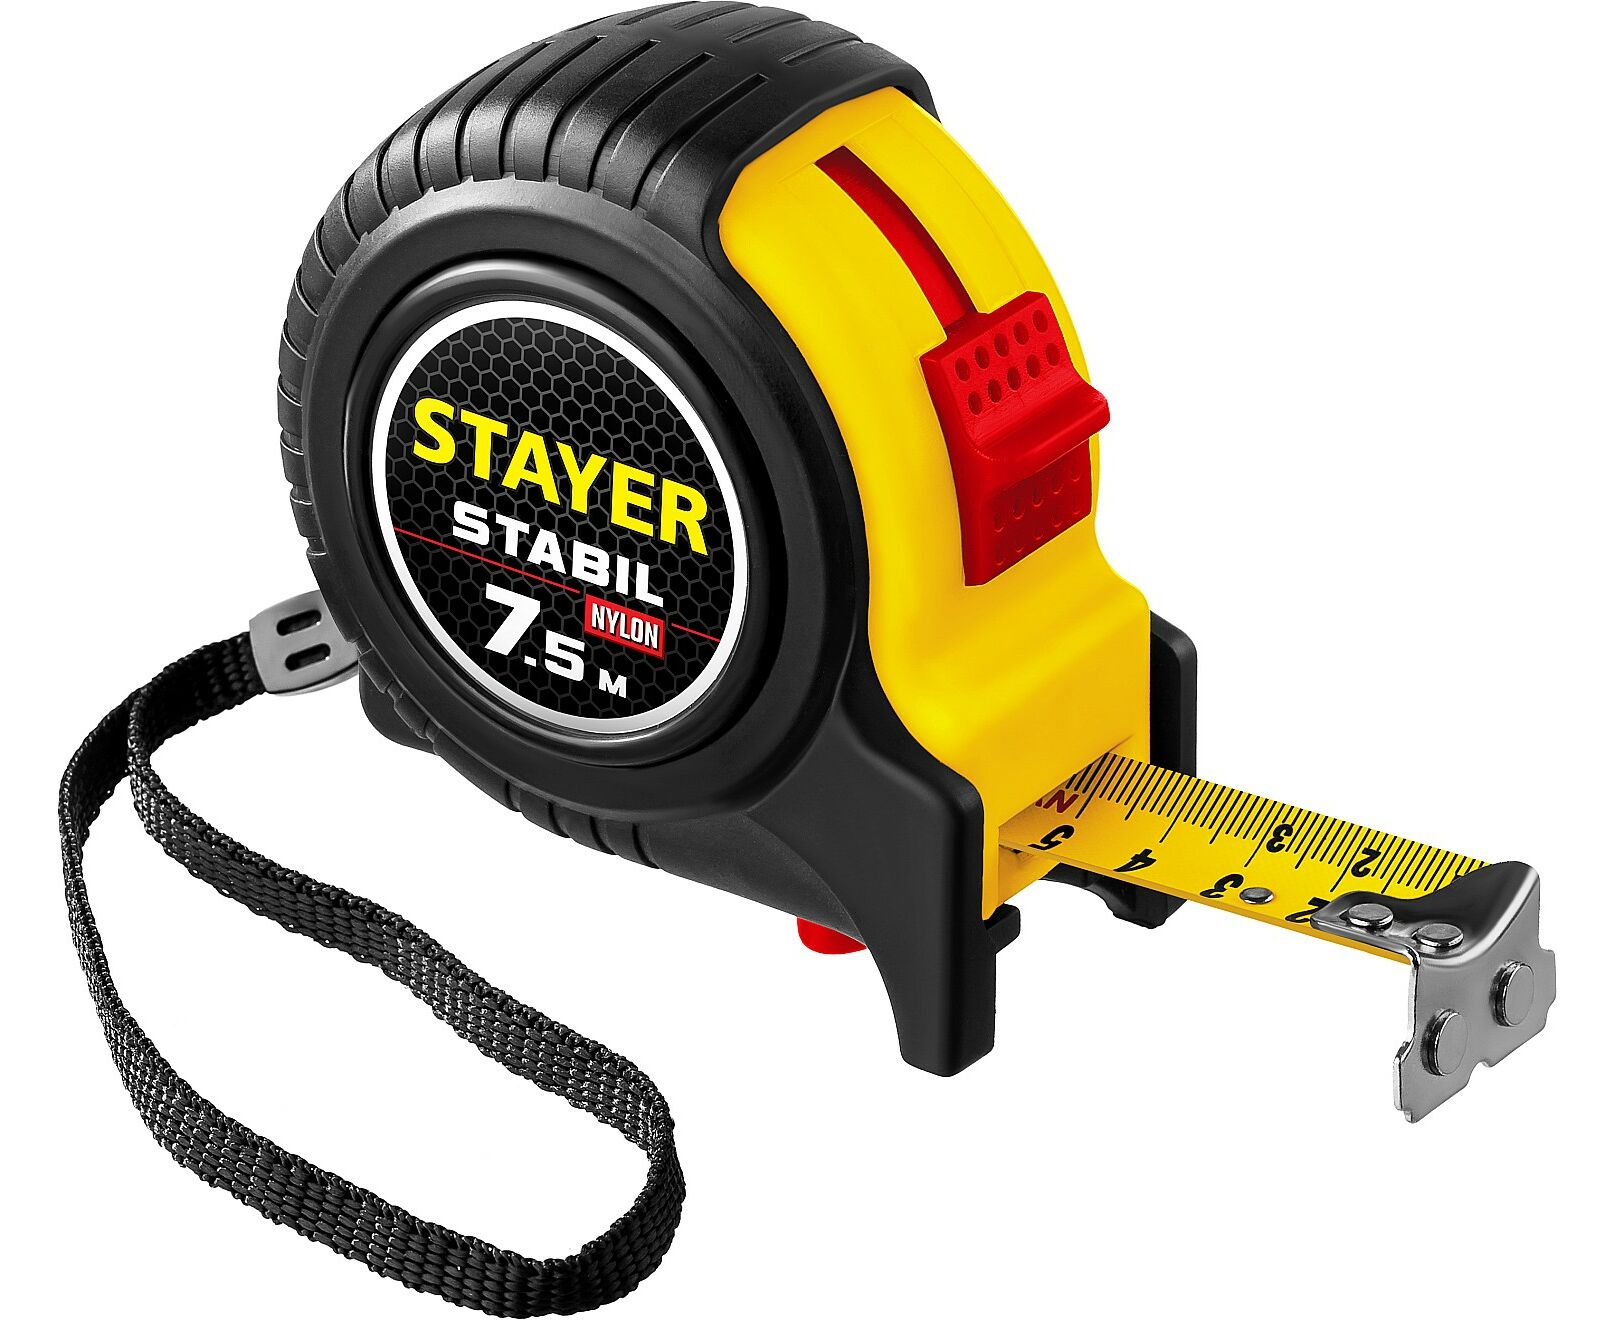 Рулетка STAYER STABIL 7,5м/25мм профессиональная, ударостойкая, обрезиненная